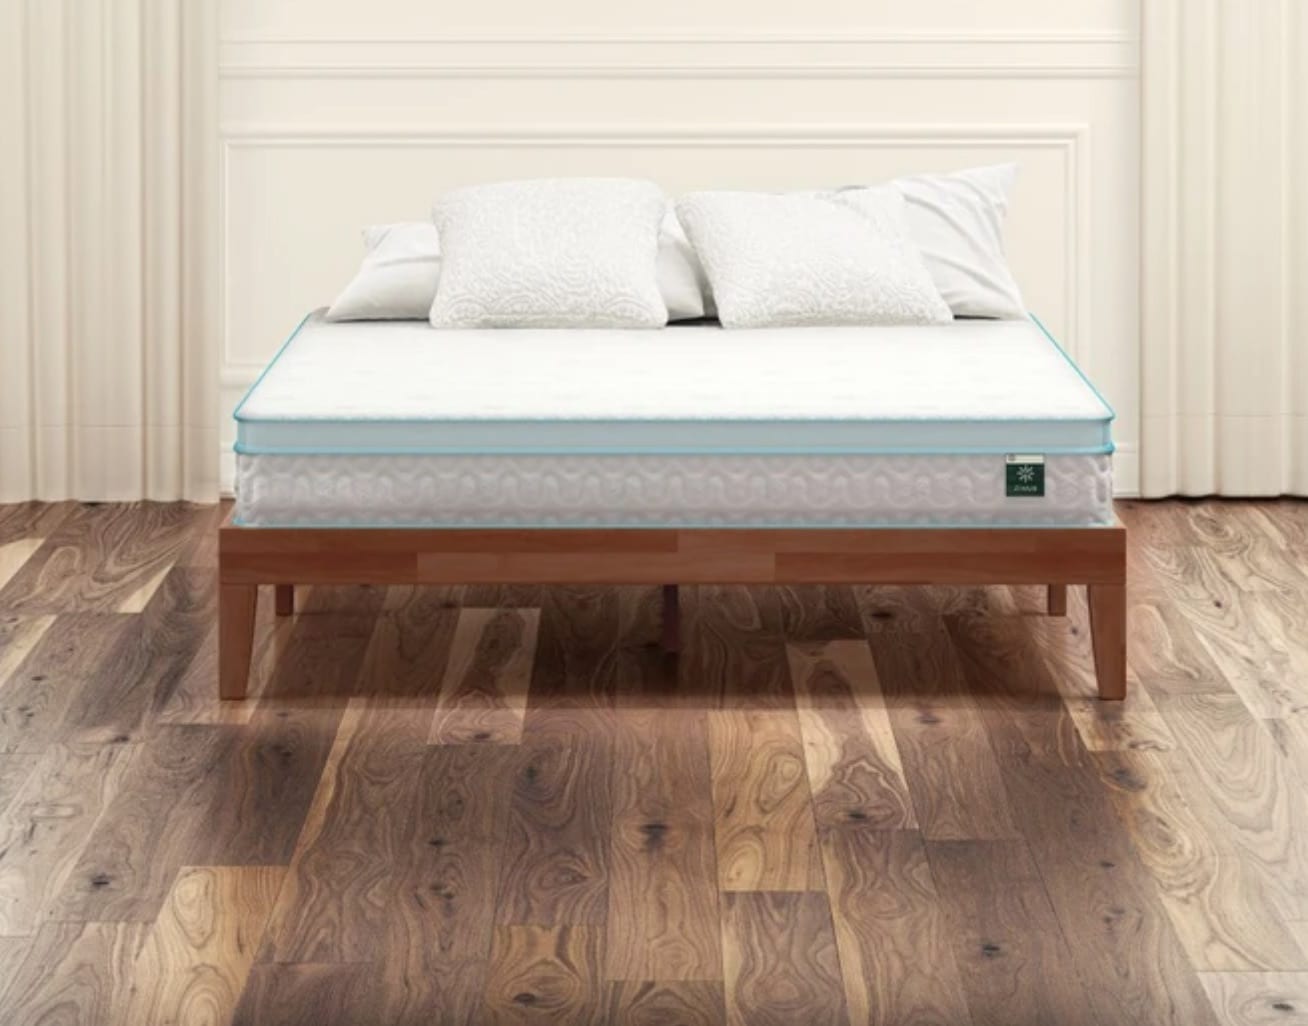 casper vs zinus foam mattress